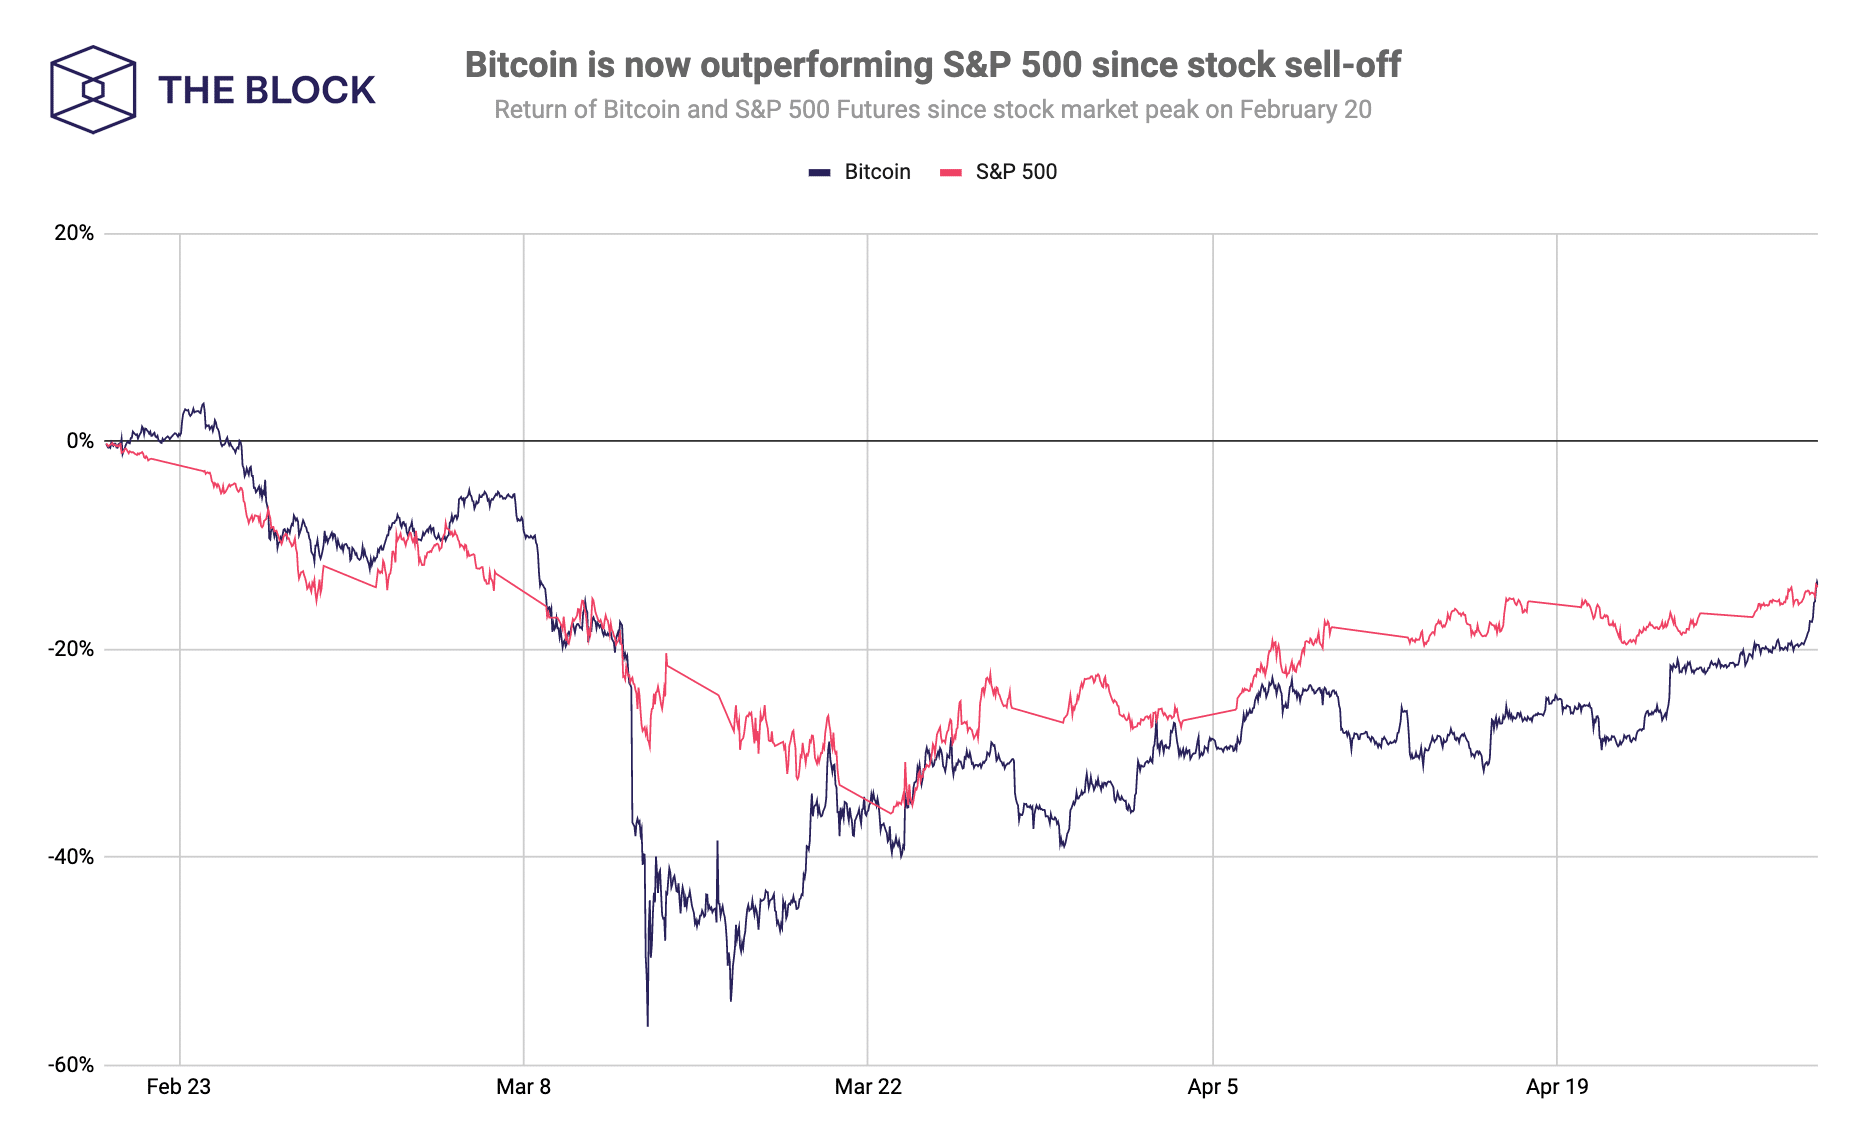 Συγκρίνετε το bitcoin και το SP 500